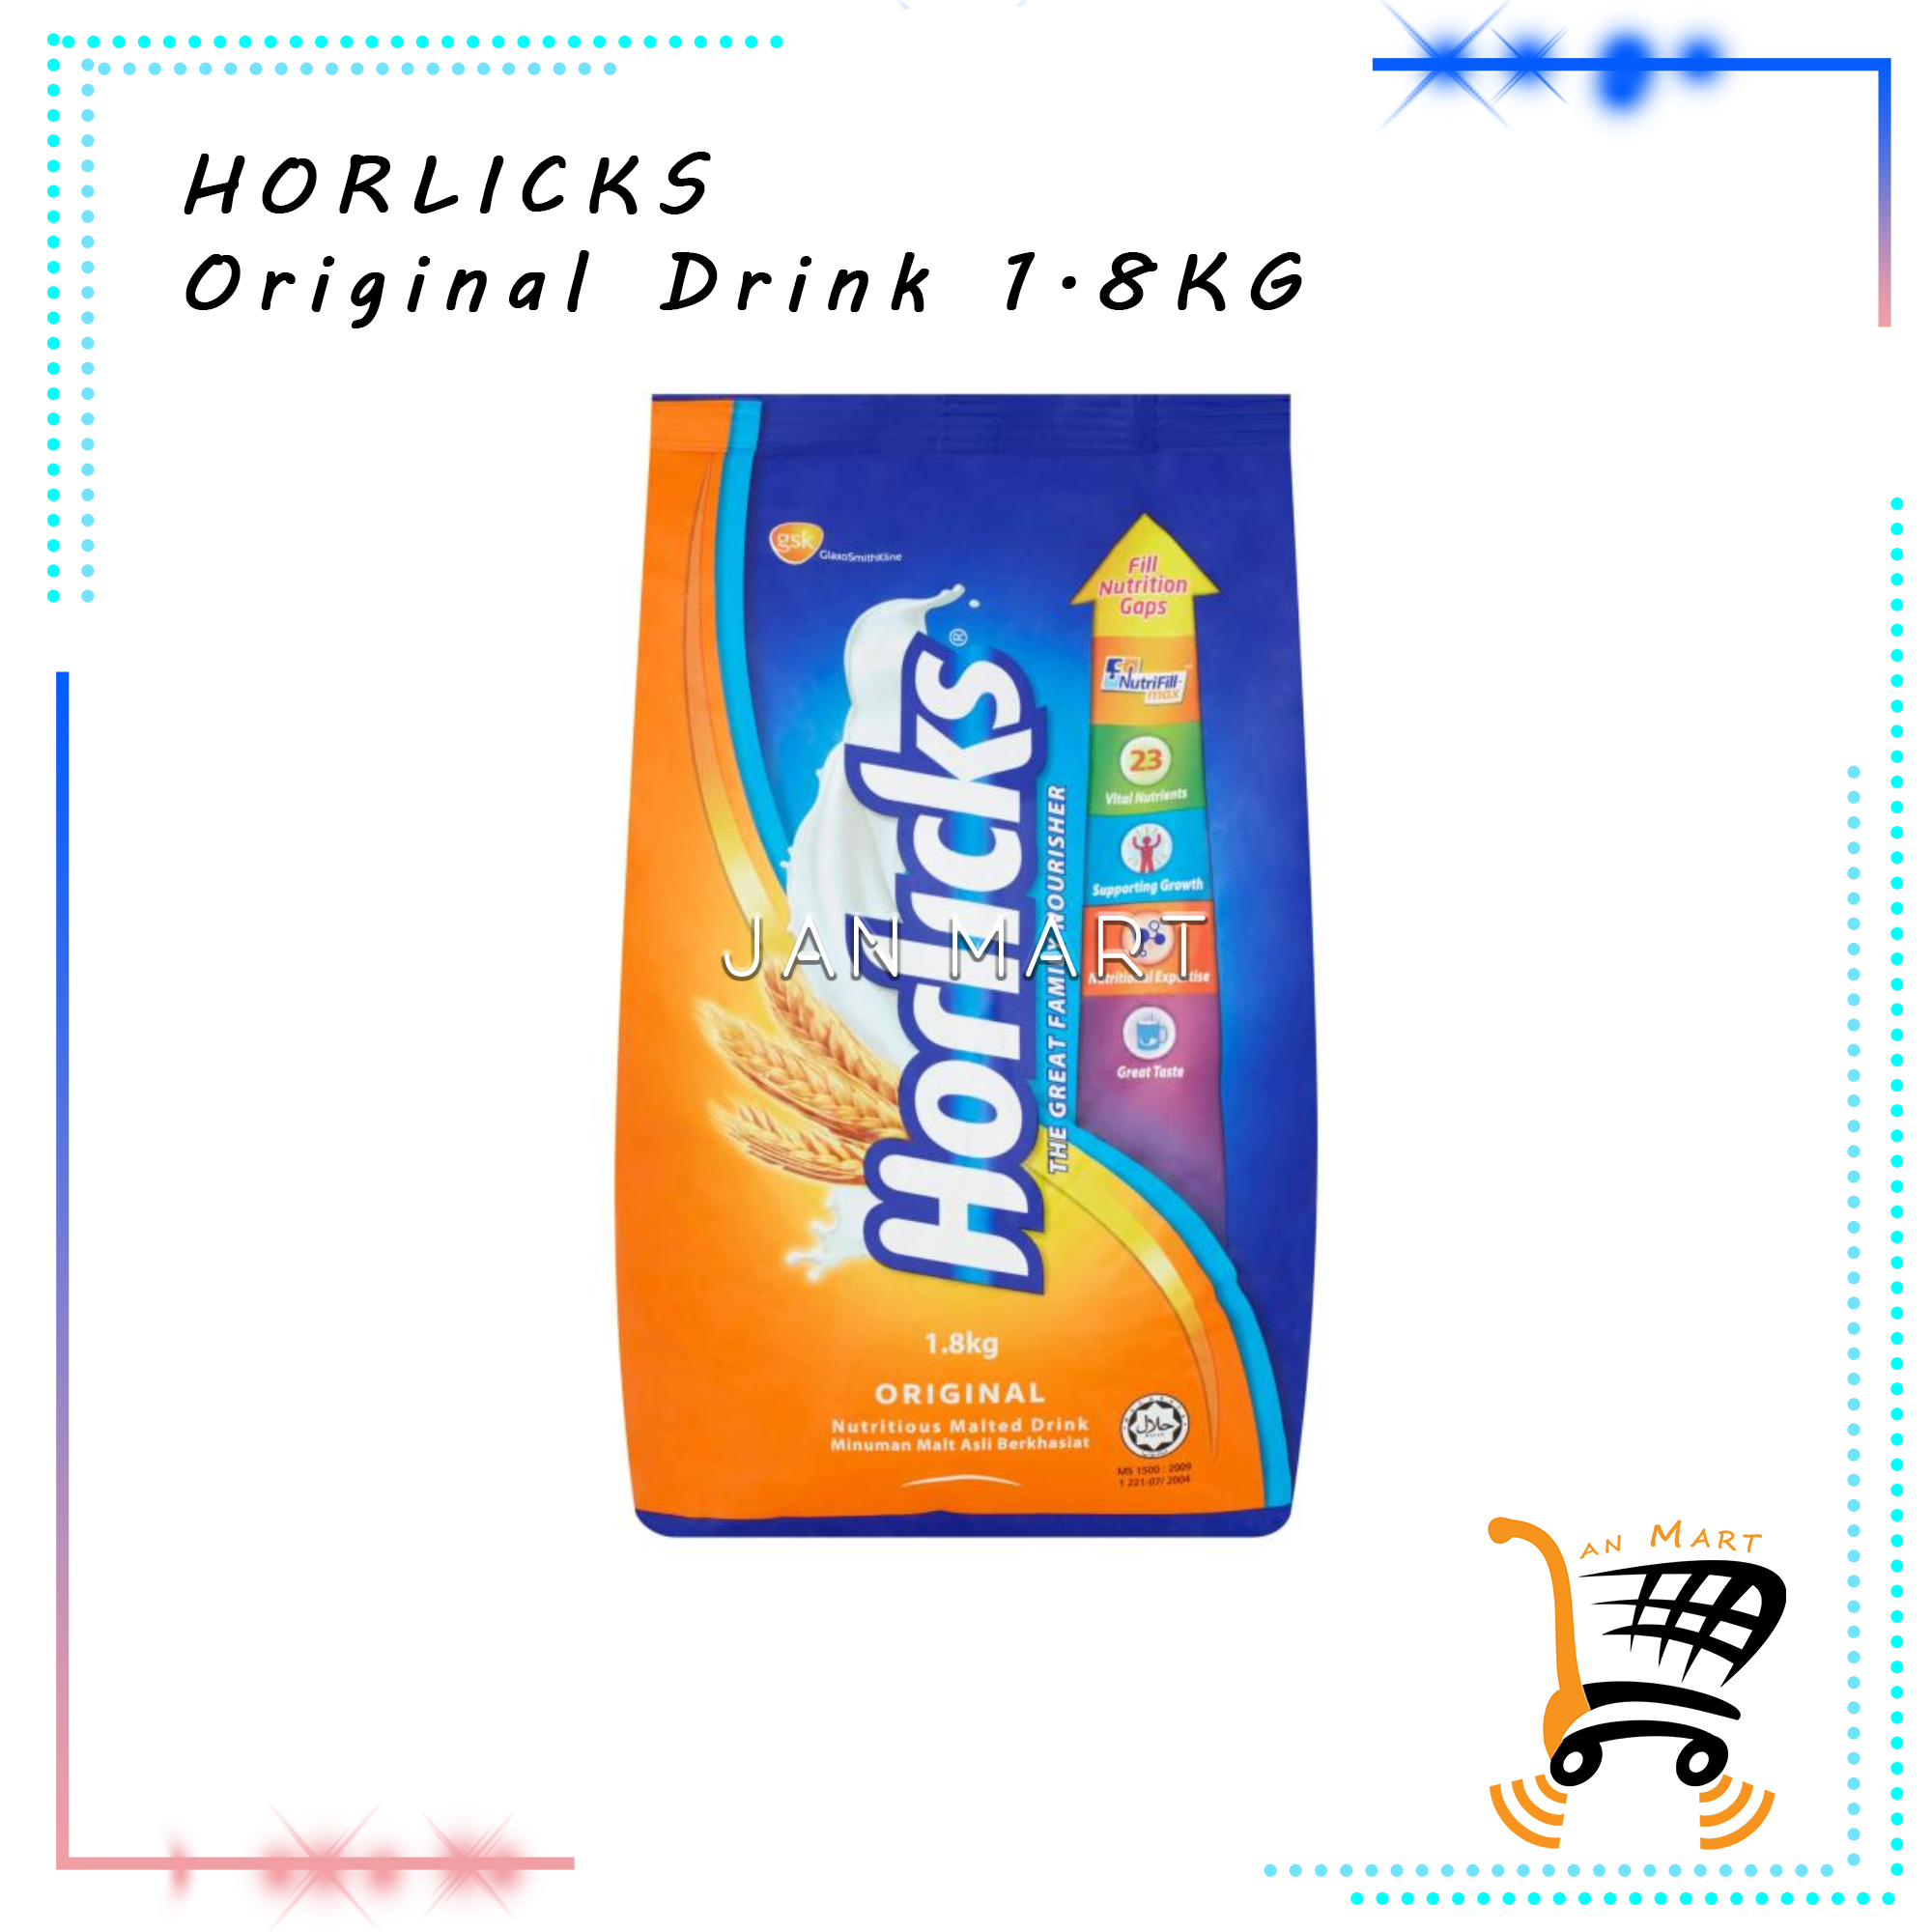 HORLICKS Refill Pack Original Drink 1.8KG